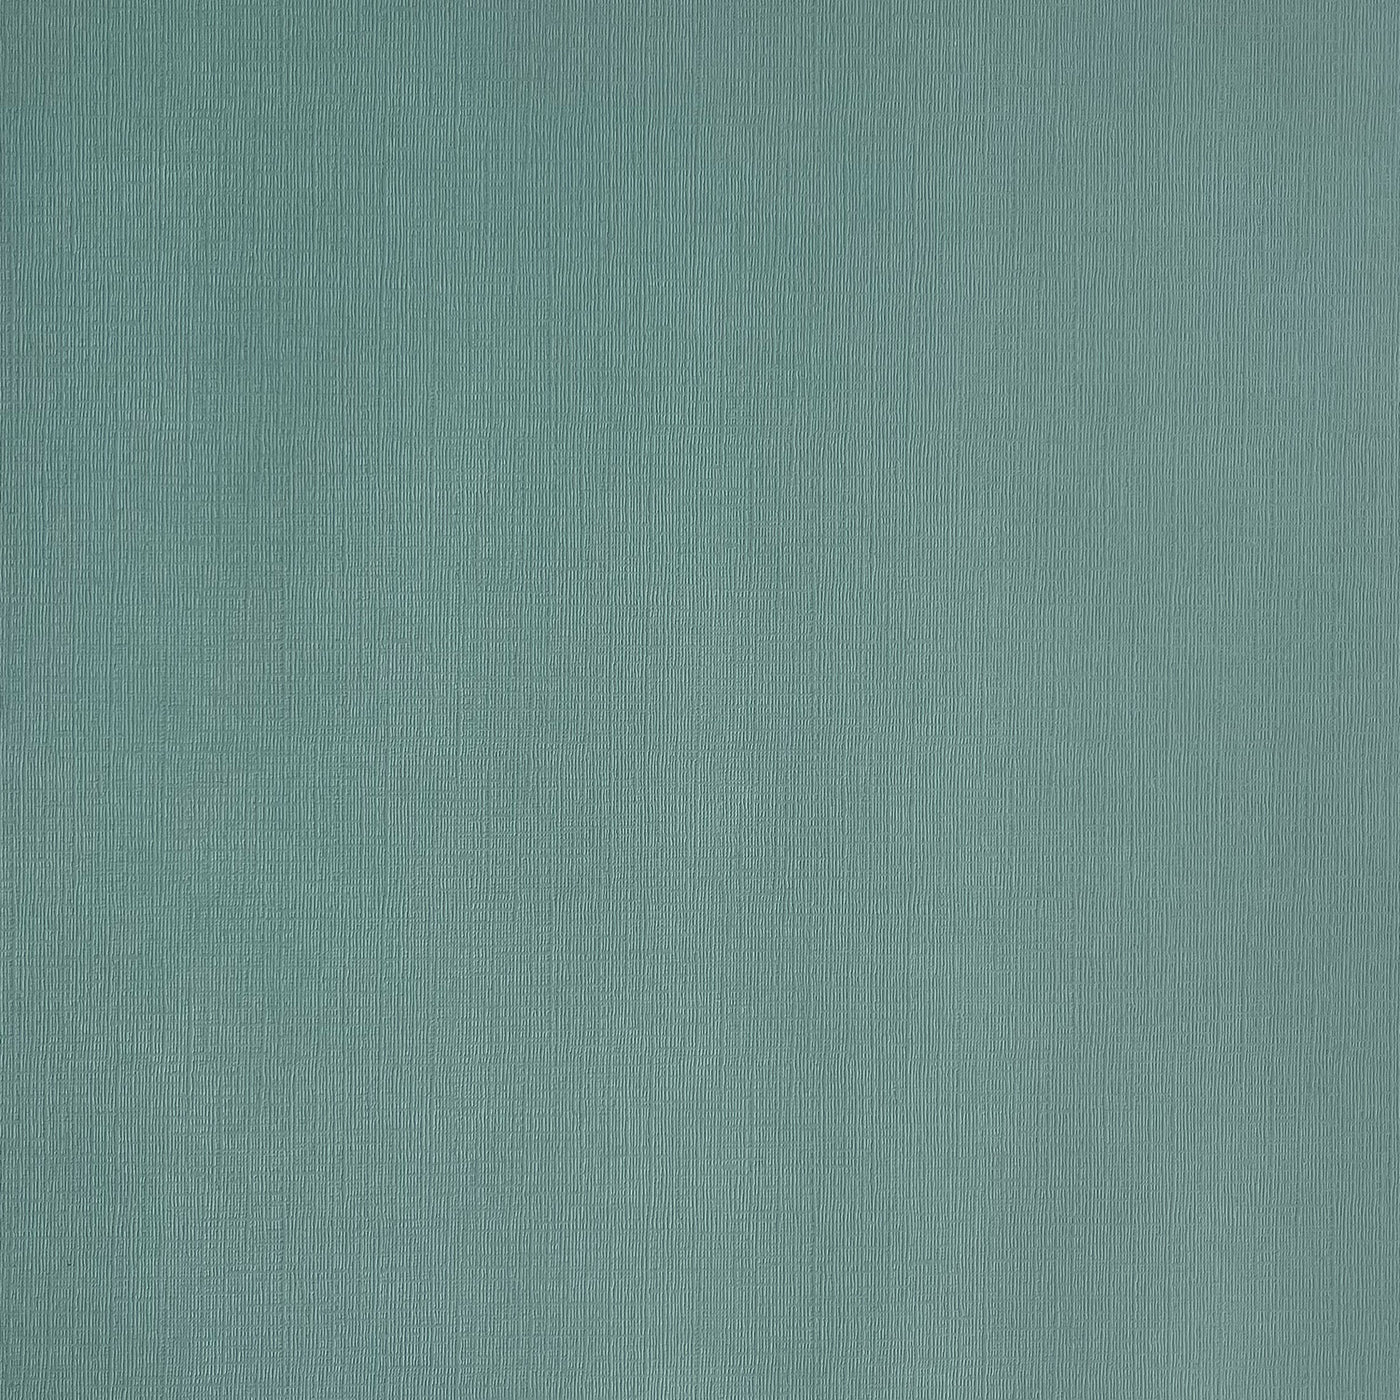 Aquamarine - Textured 12x12 Cardstock - turquoise canvas scrapbook paper